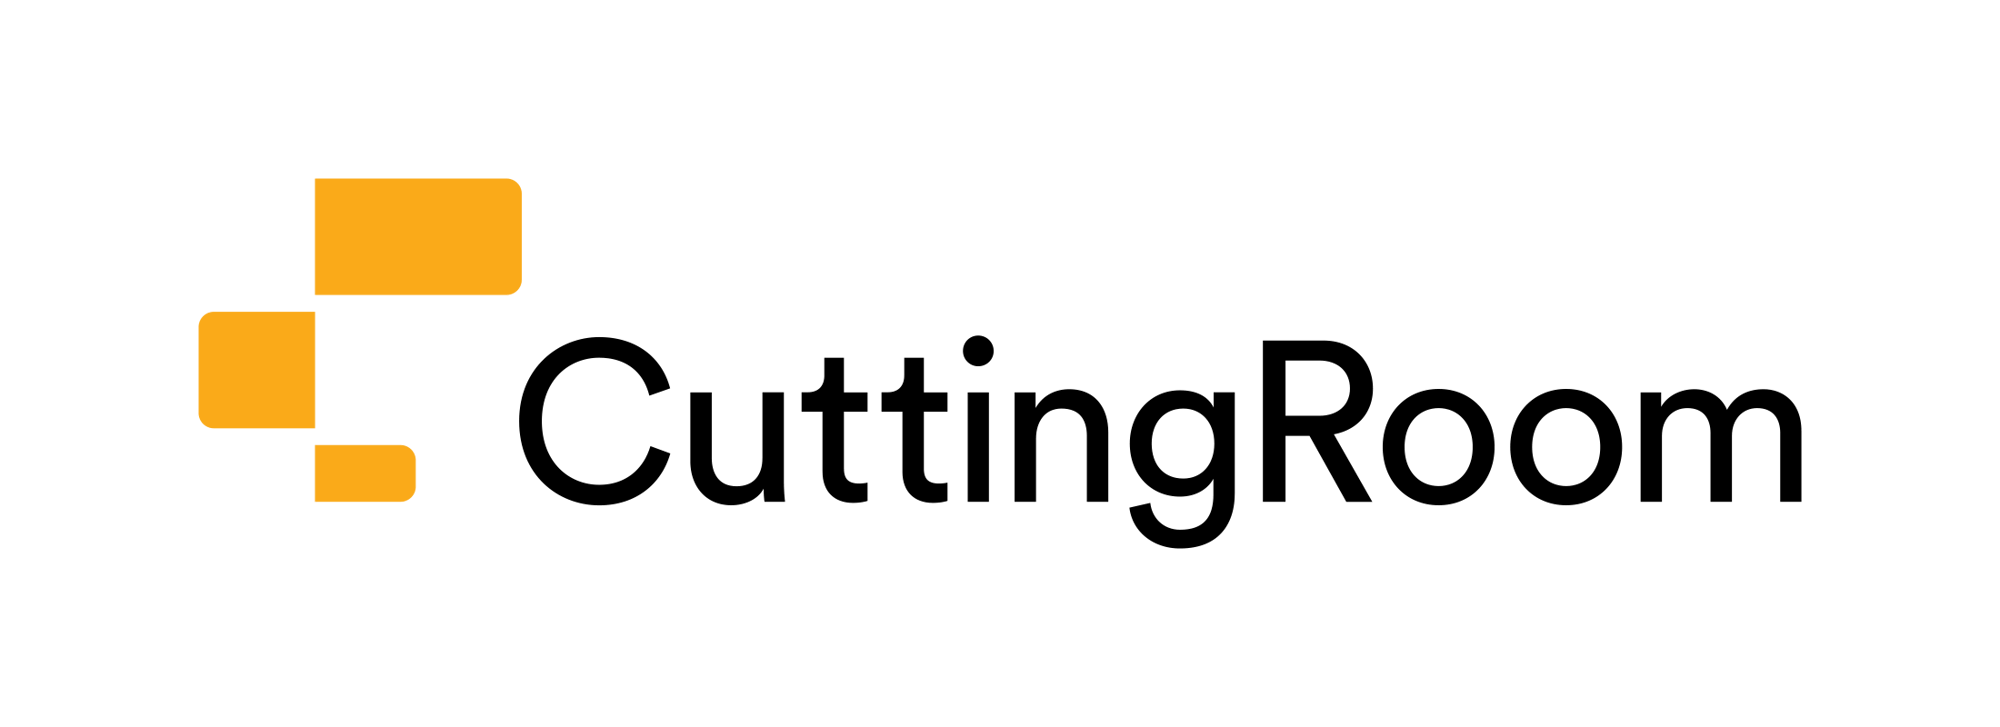 cuttingroom-logo